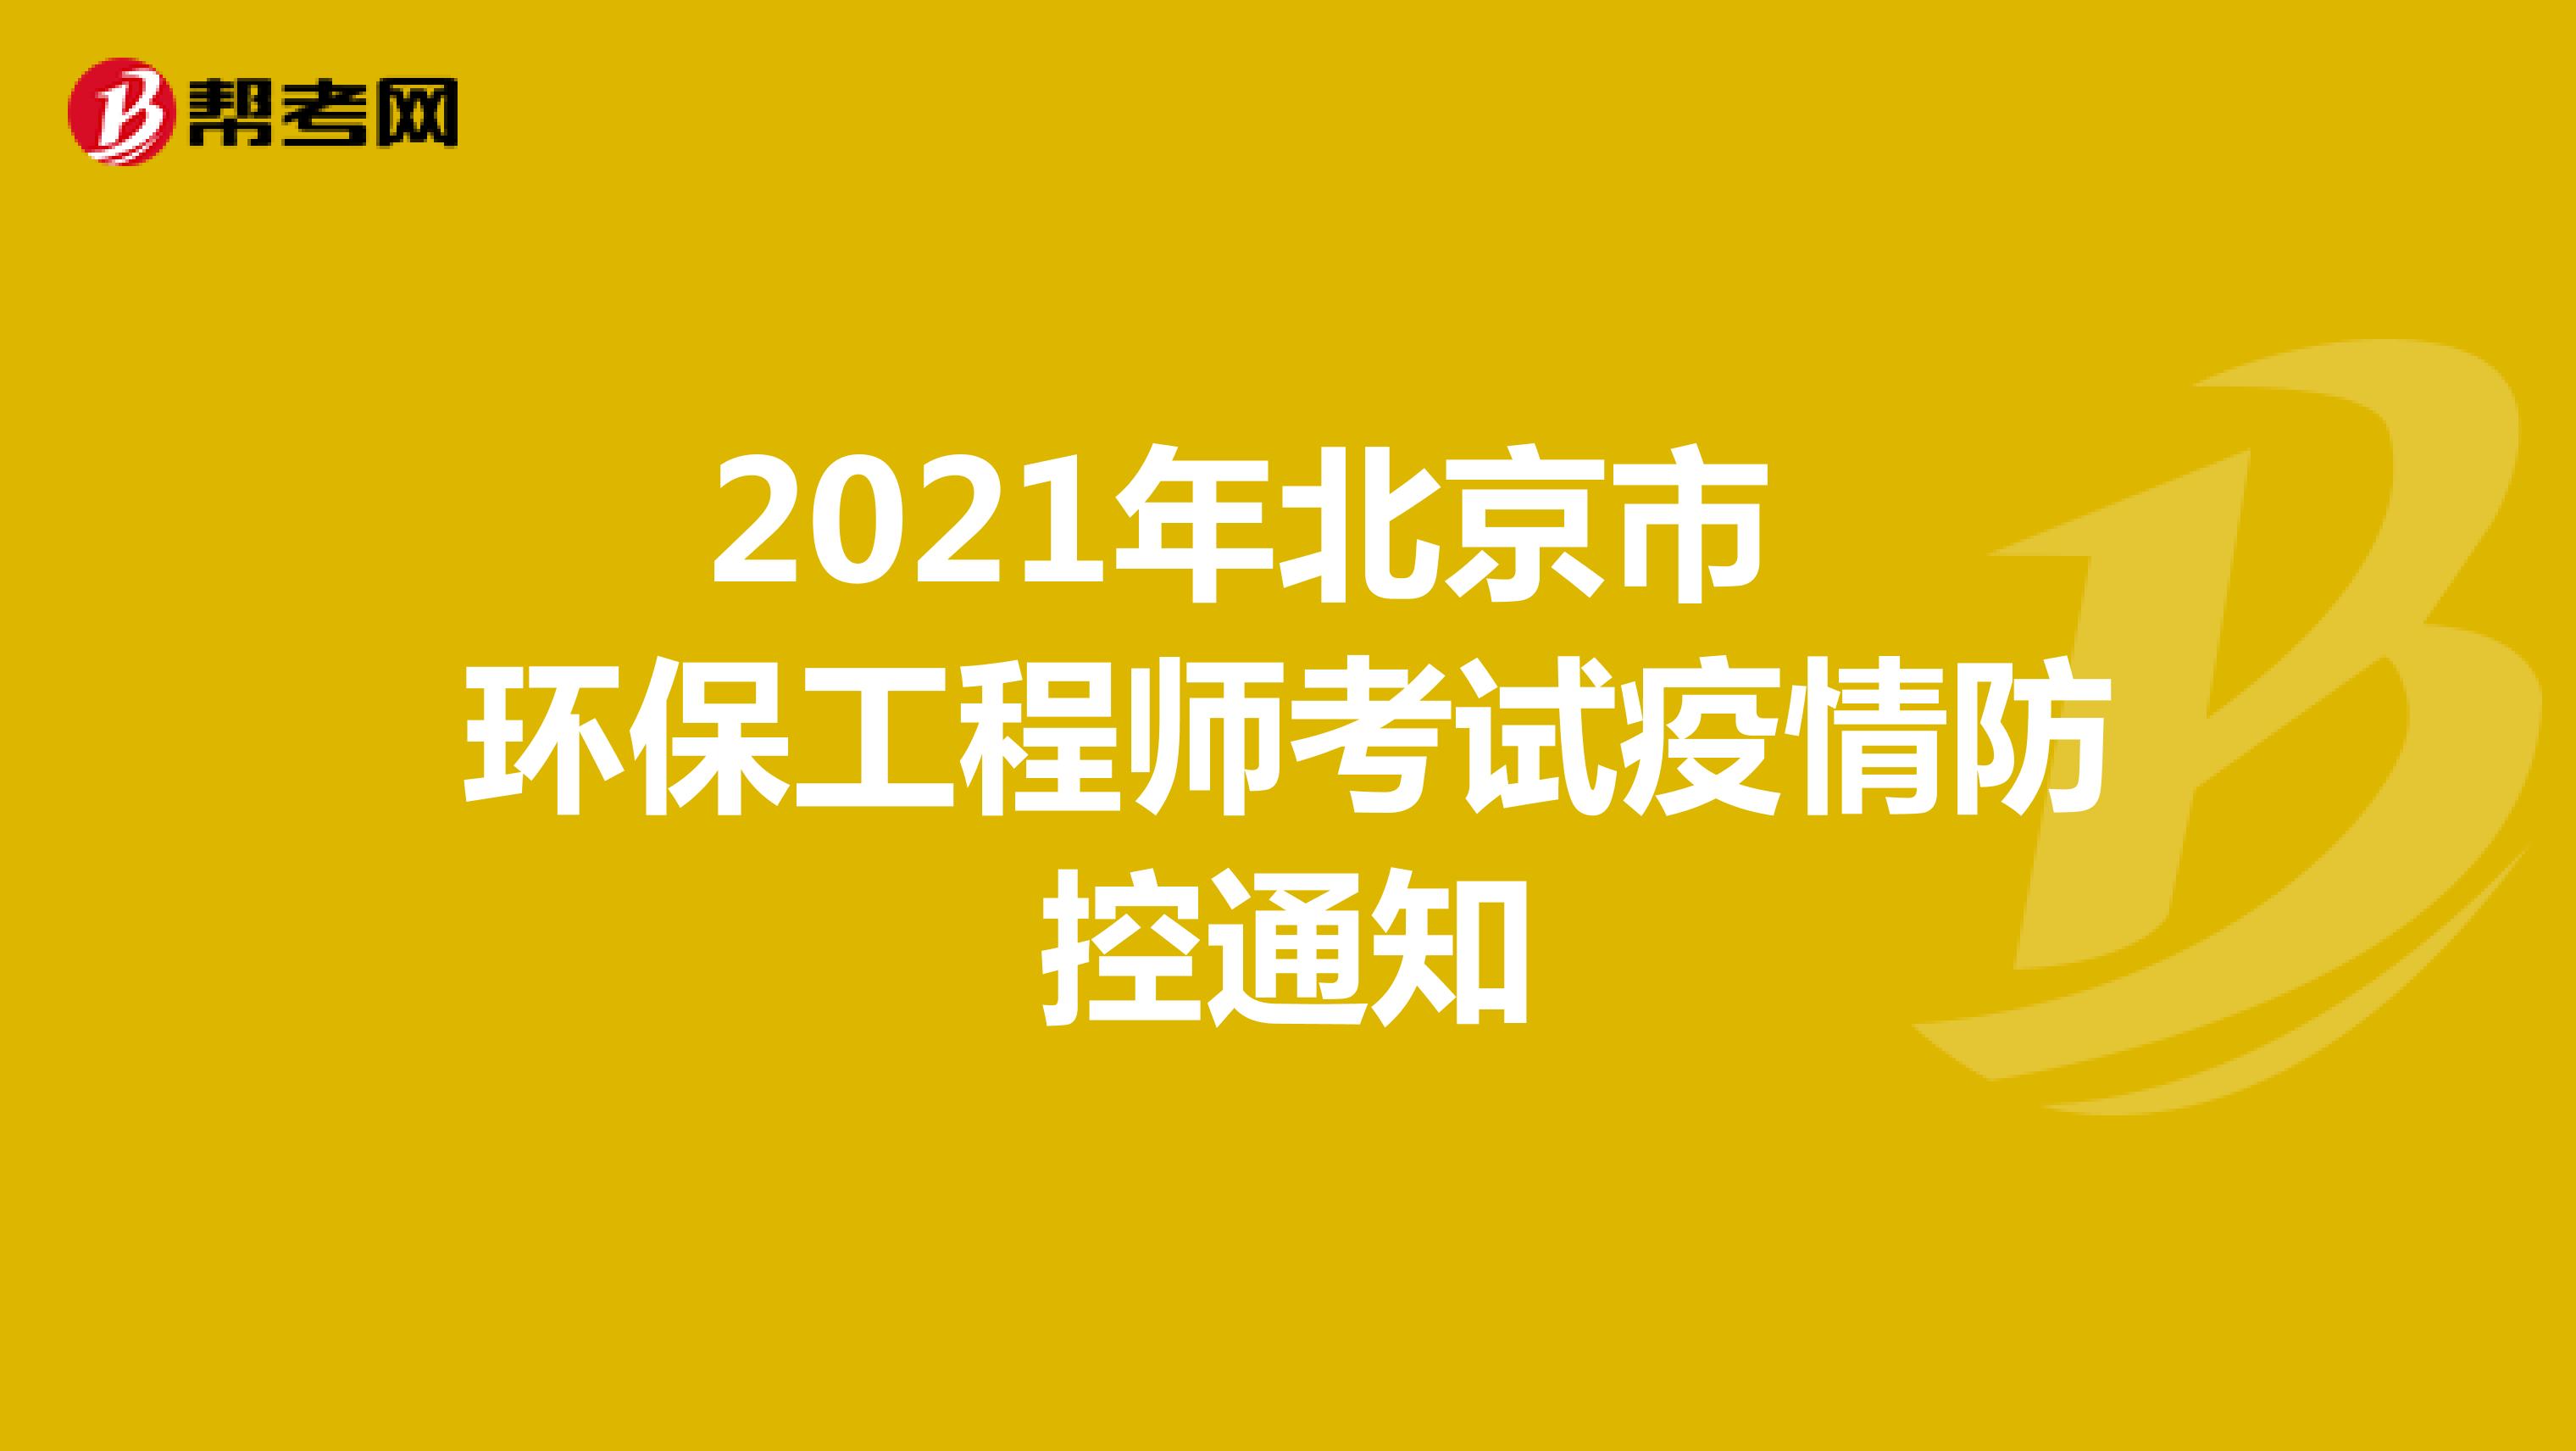 2021年北京市环保工程师考试疫情防控通知